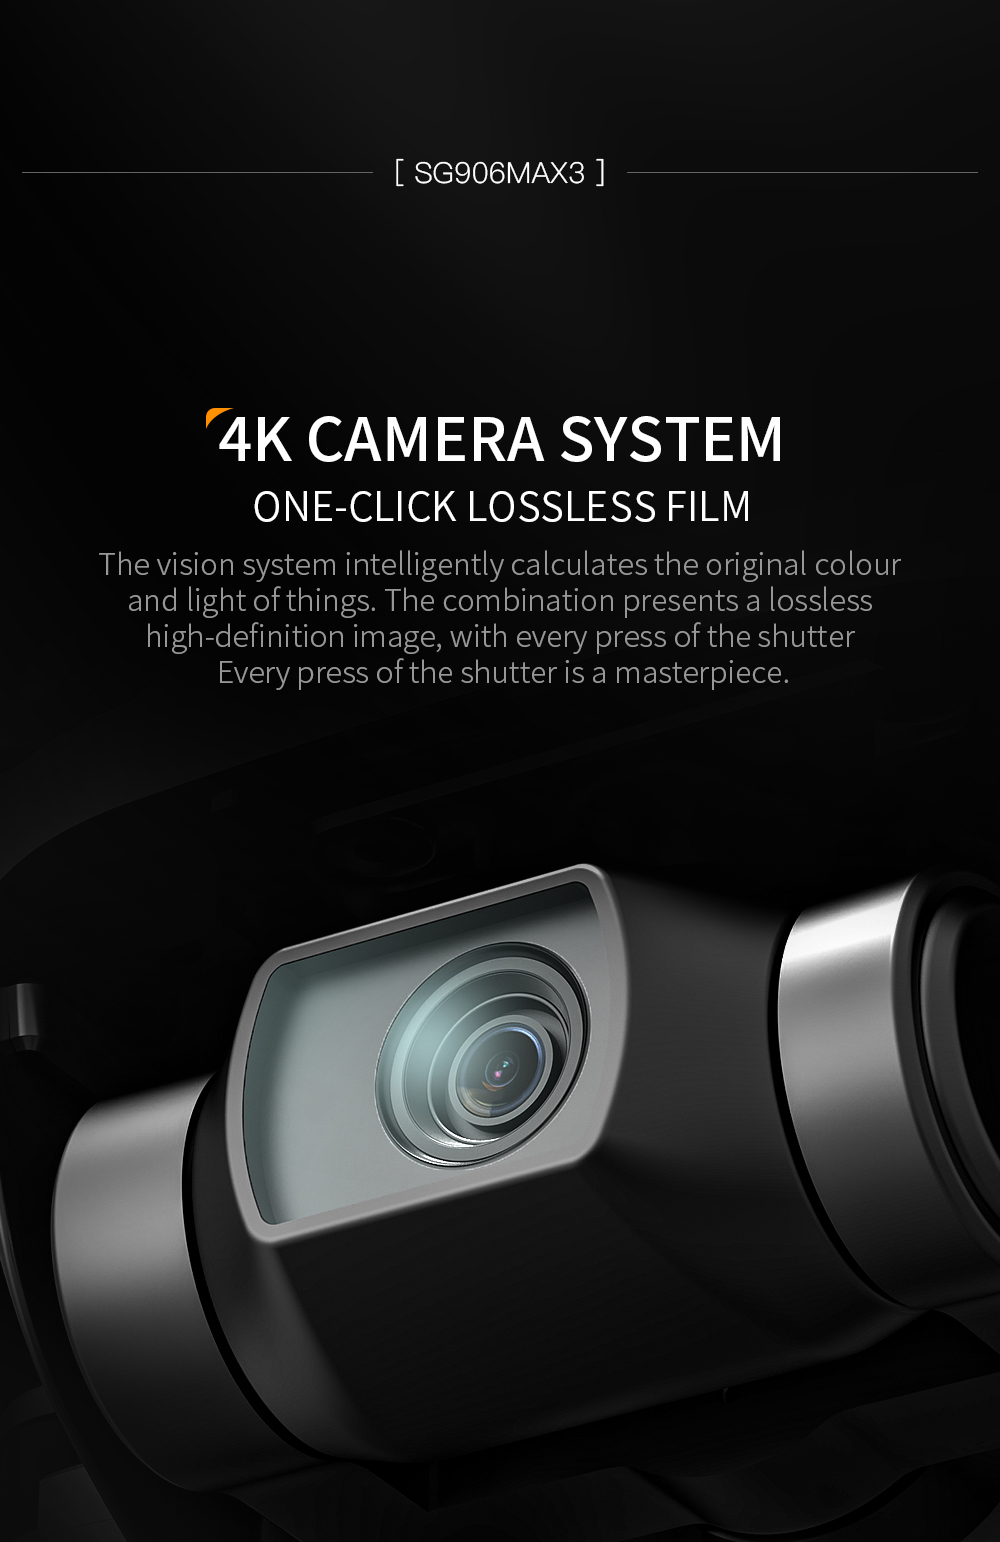 کوادکوپتر SG906 MAX3 دارای دوربین با کیفیت 4K